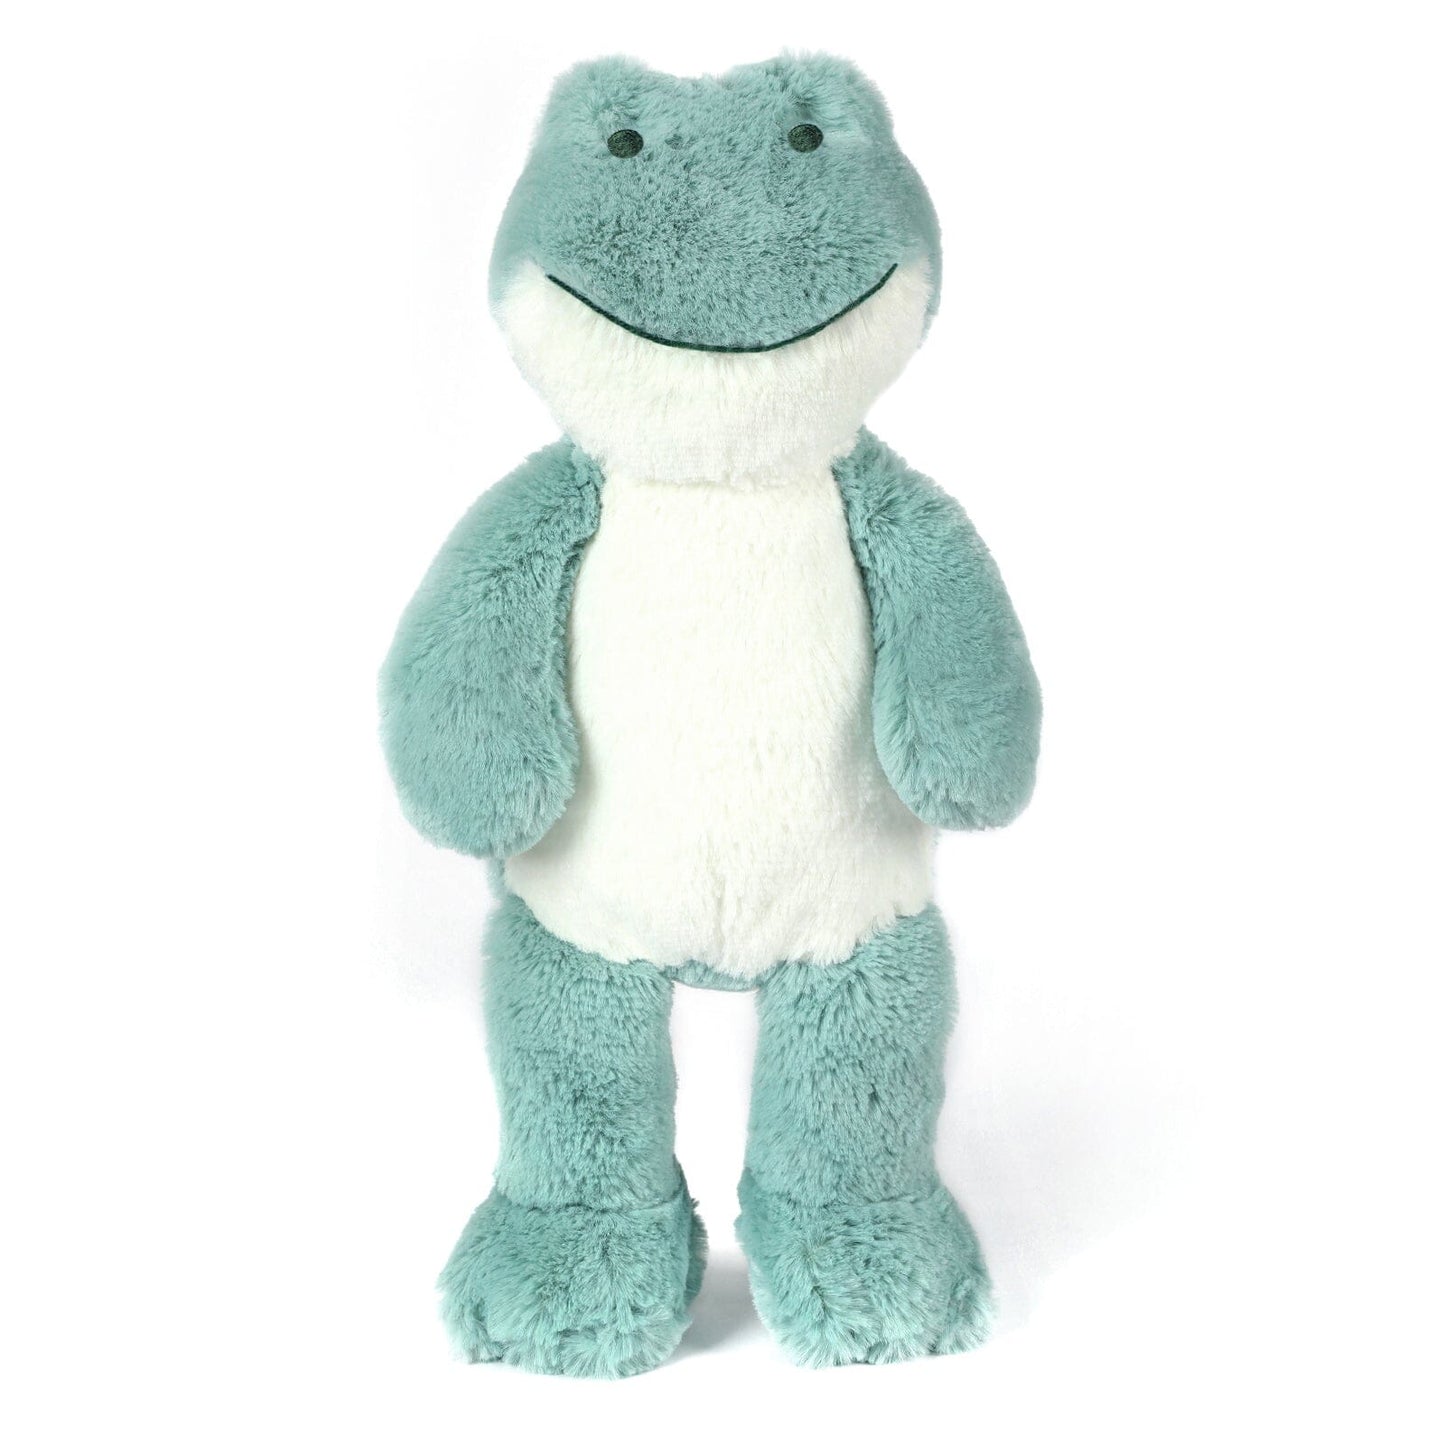 OB Designs-Freddy Frog Soft Toy